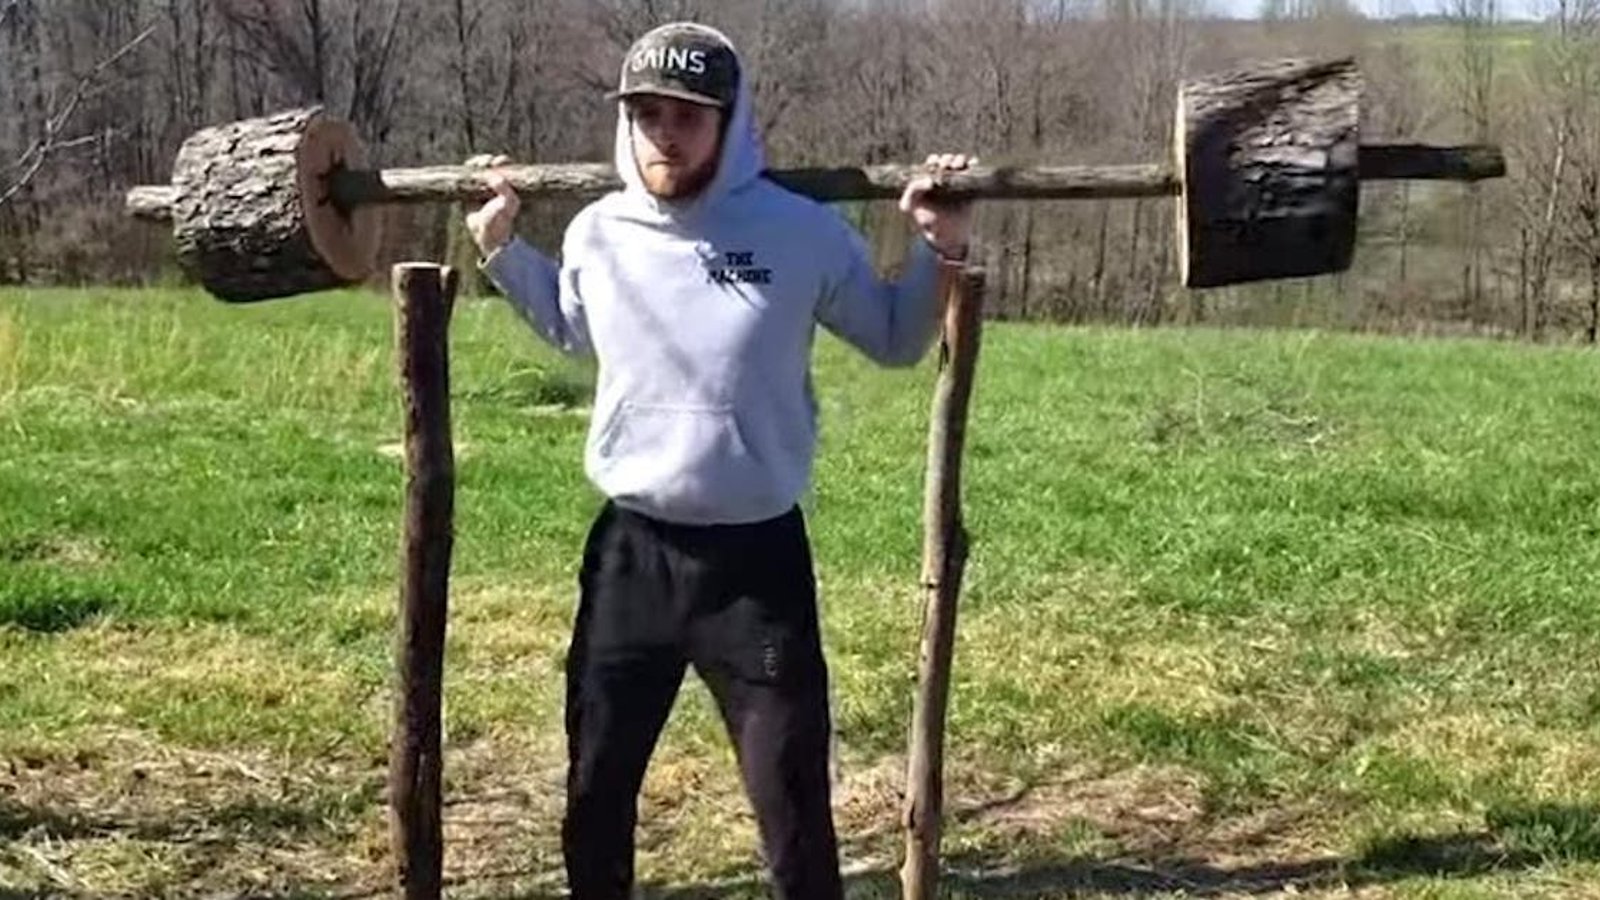 Ne pouvant plus aller au gym, il fabrique ses propres appareils d'entraînement... en bois!